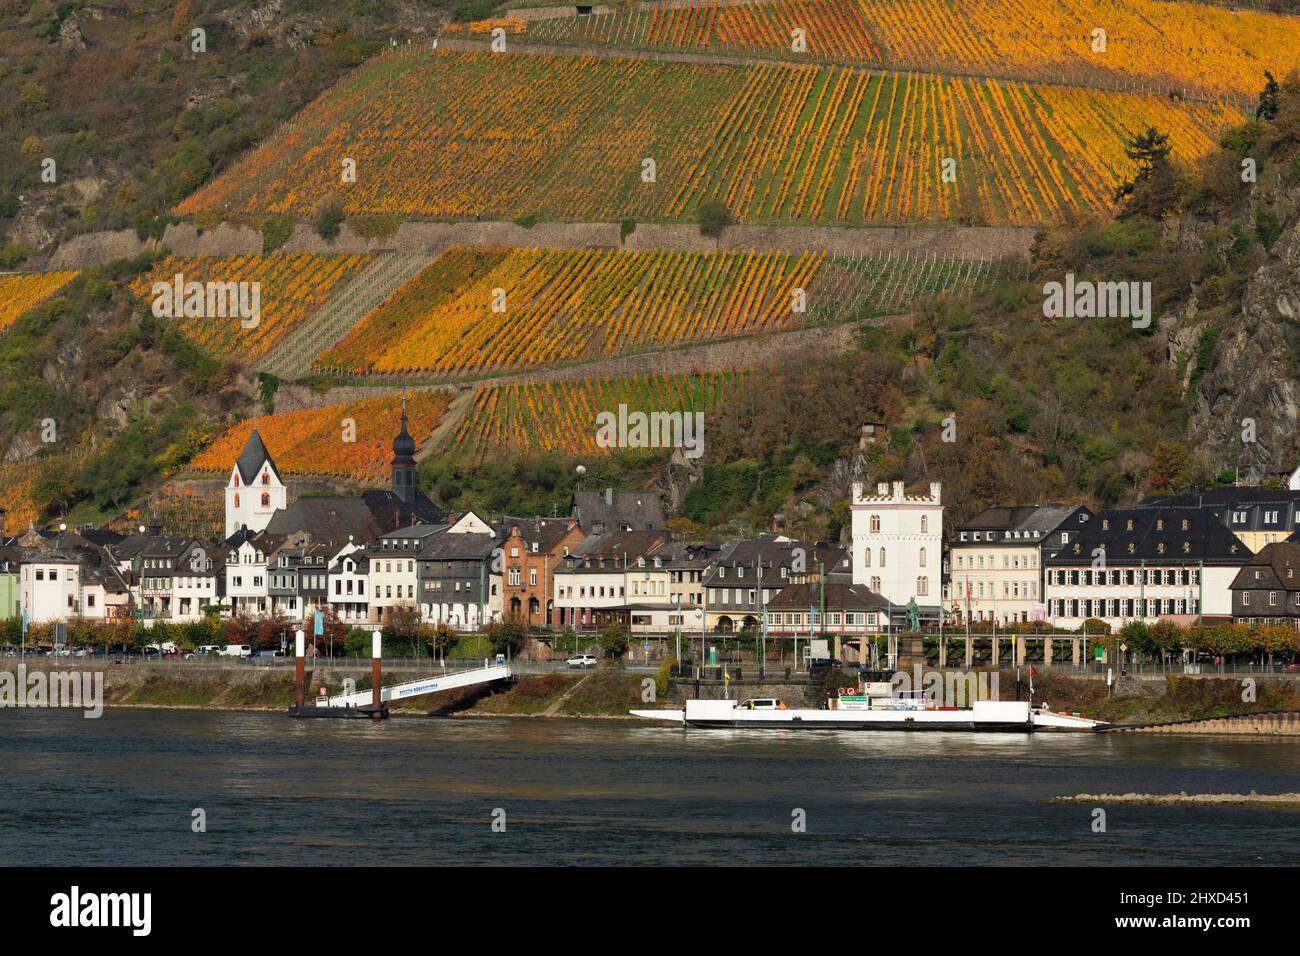 Kaub, Upper Middle Rhine Valley, Rhineland-Palatinate, Germany Stock Photo